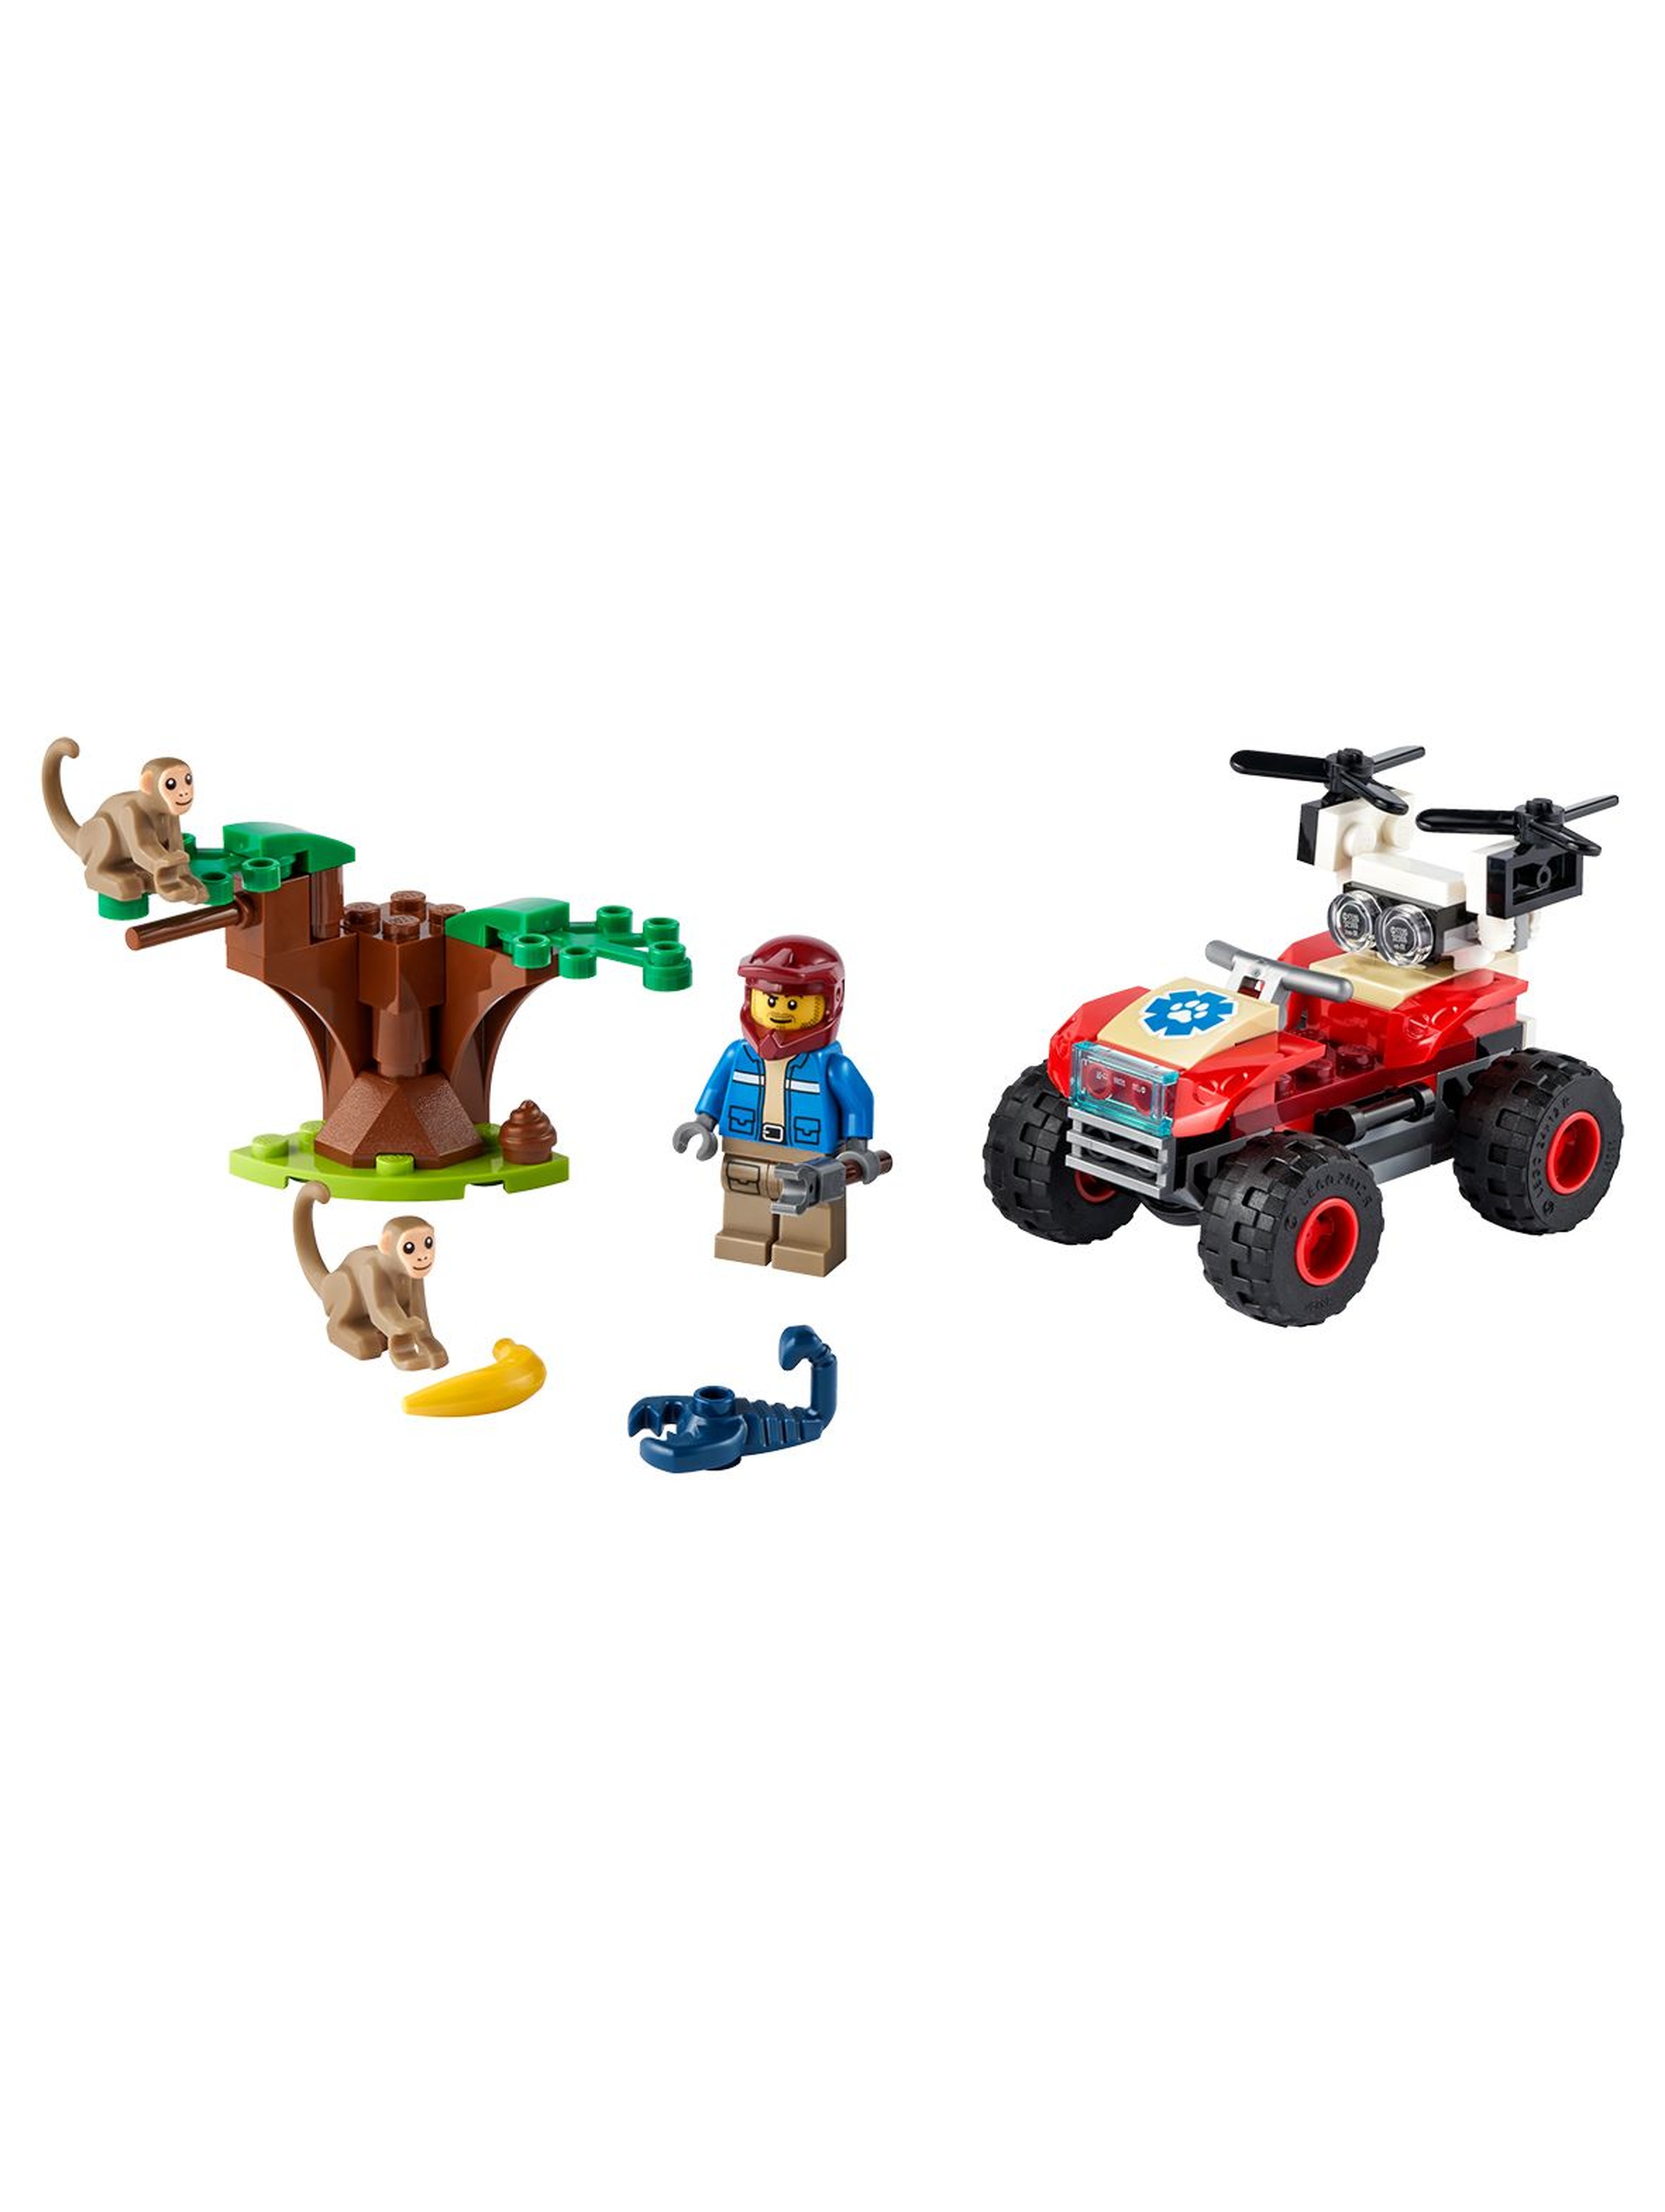 LEGO City - Quad ratowników dzikich zwierząt 60300 -  74 el wiek 5+